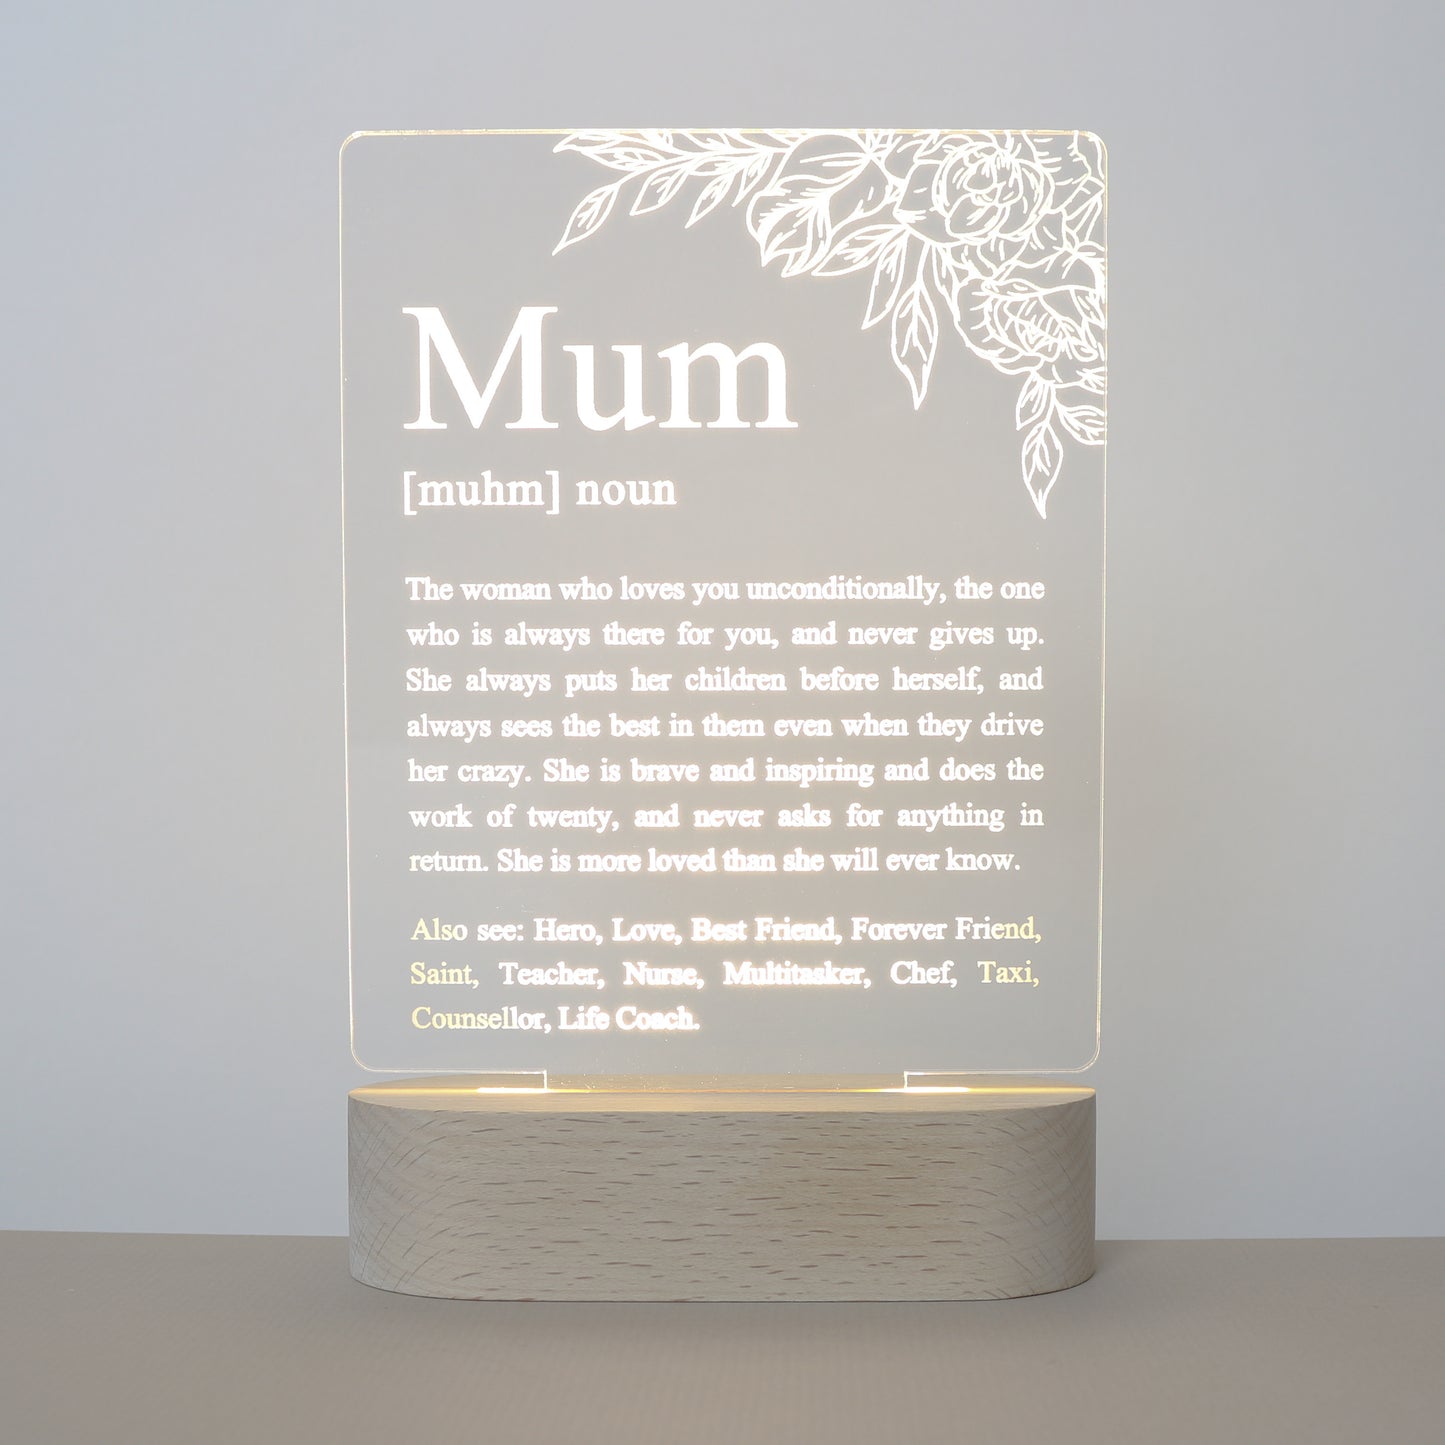 Mum Definition Lamp